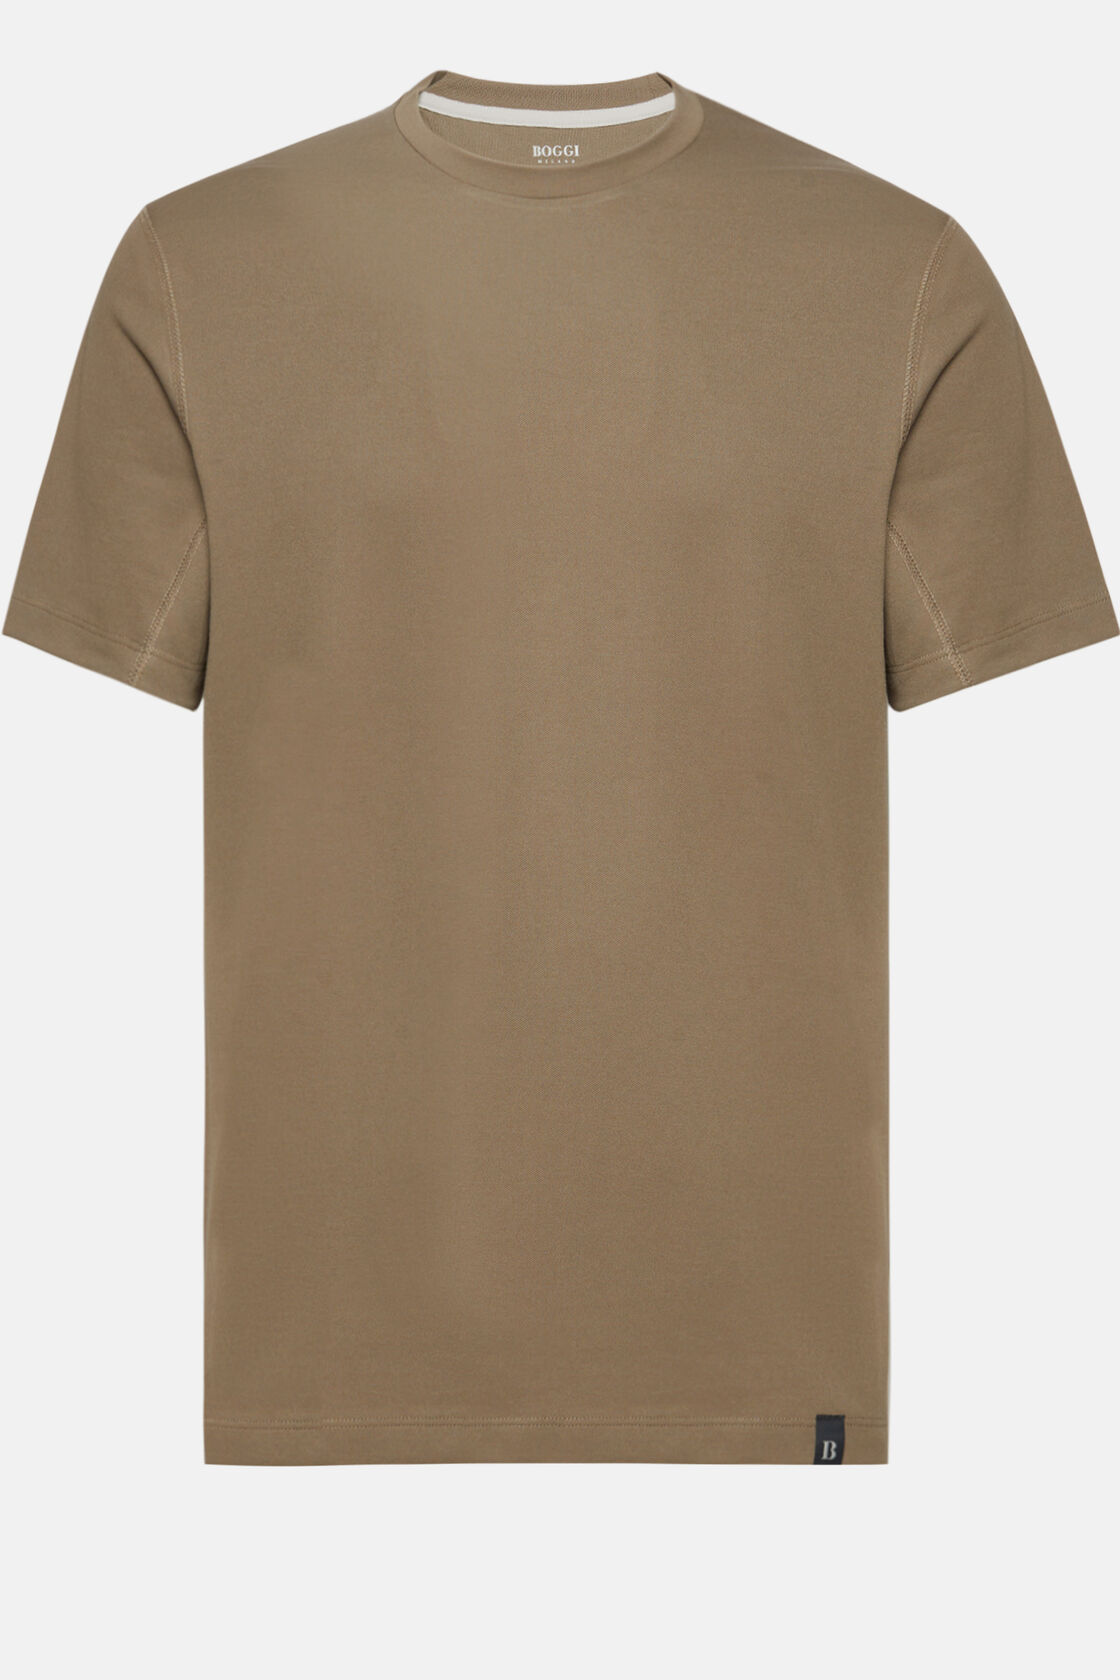 T-Shirt Aus Hochwertigem Und Nachhaltigem Pikee, Braun, hi-res